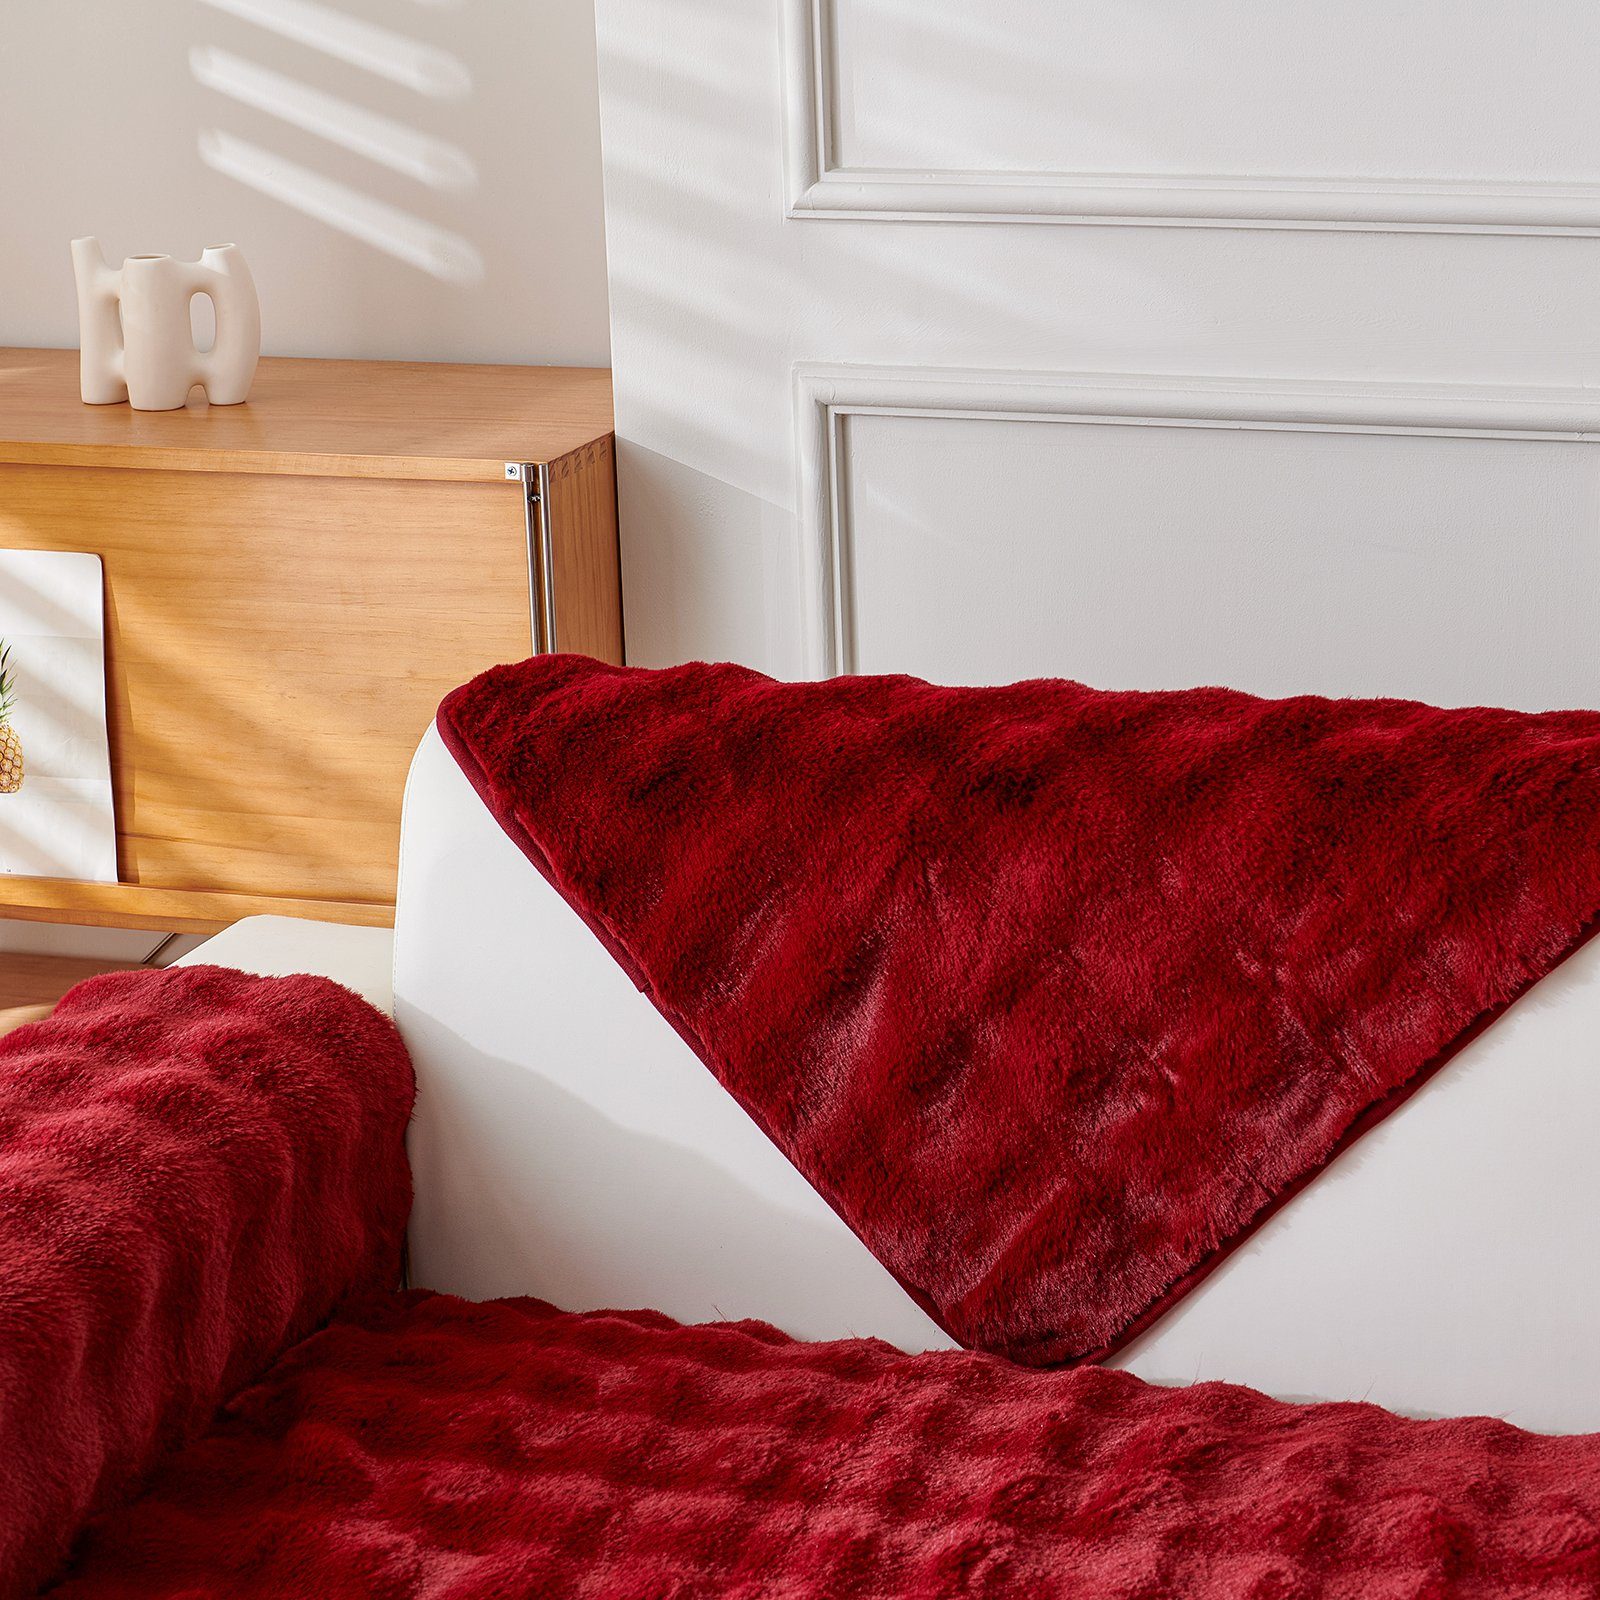 Qelus Sofabezug, Rutschfester Plüsch Sofabezug Wohnzimmerdekoration Rot Sofahusse für